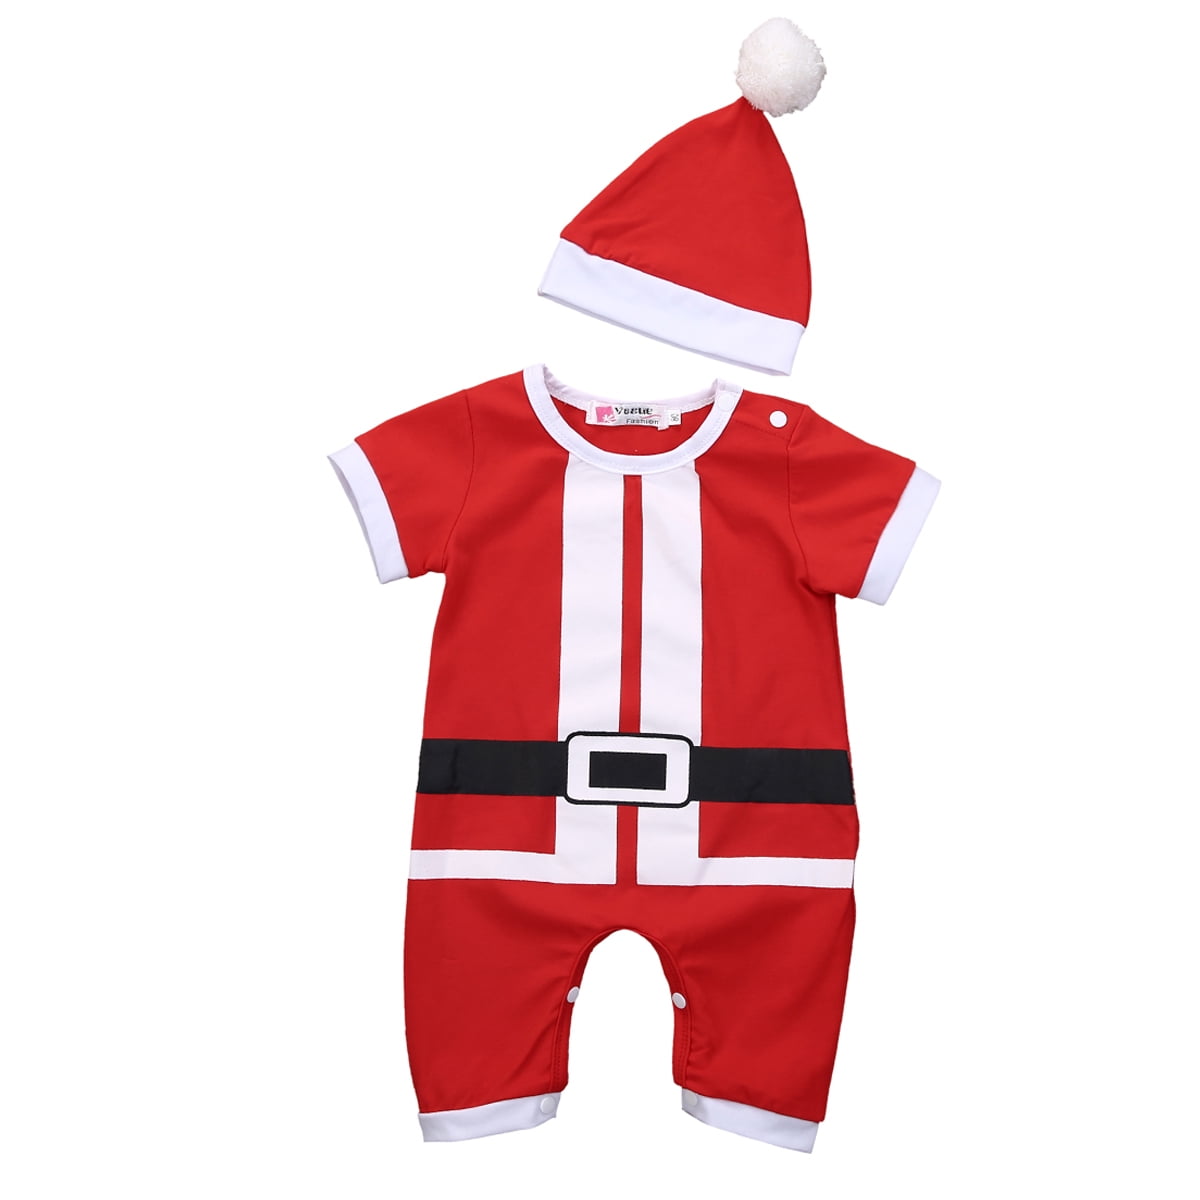 santa claus clothes for baby boy